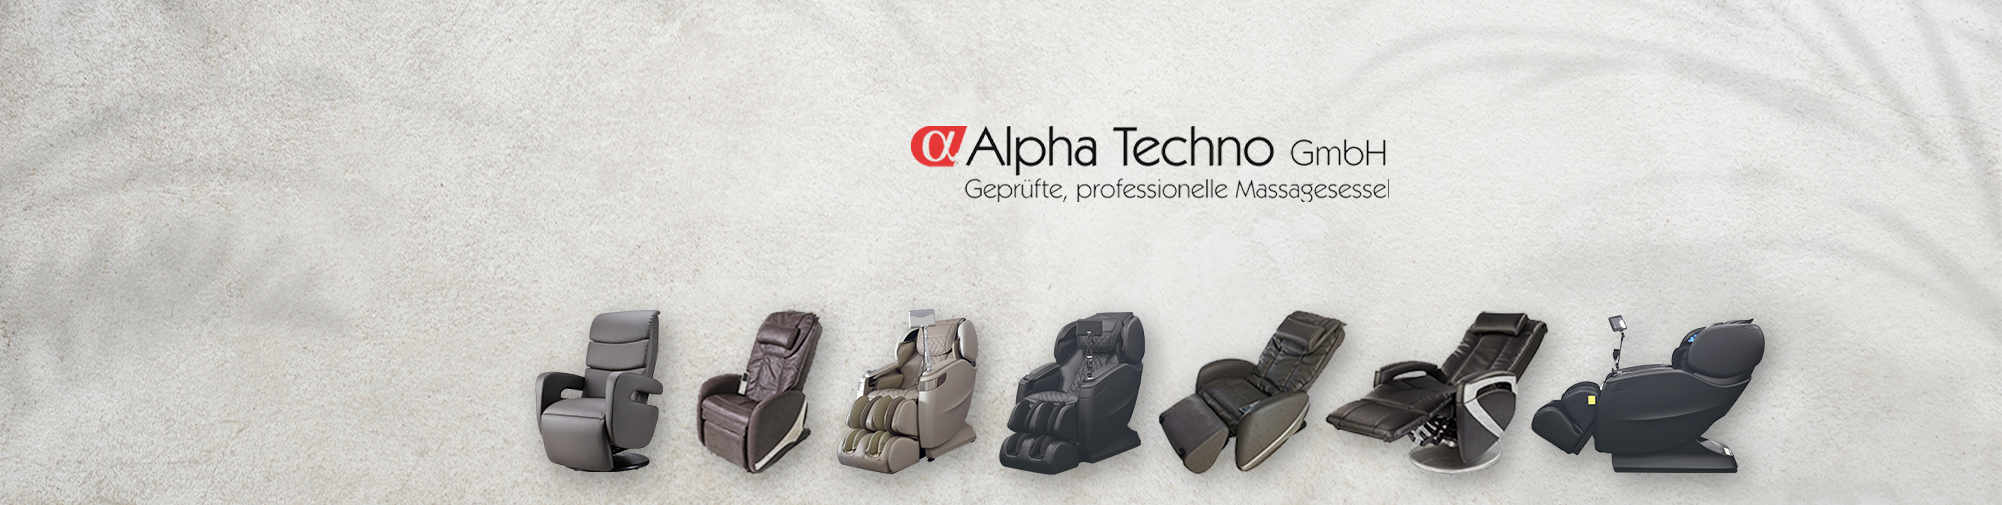 Alpha Techno - Masaj koltuğu dünyasında Avrupa'nın 1 numarası